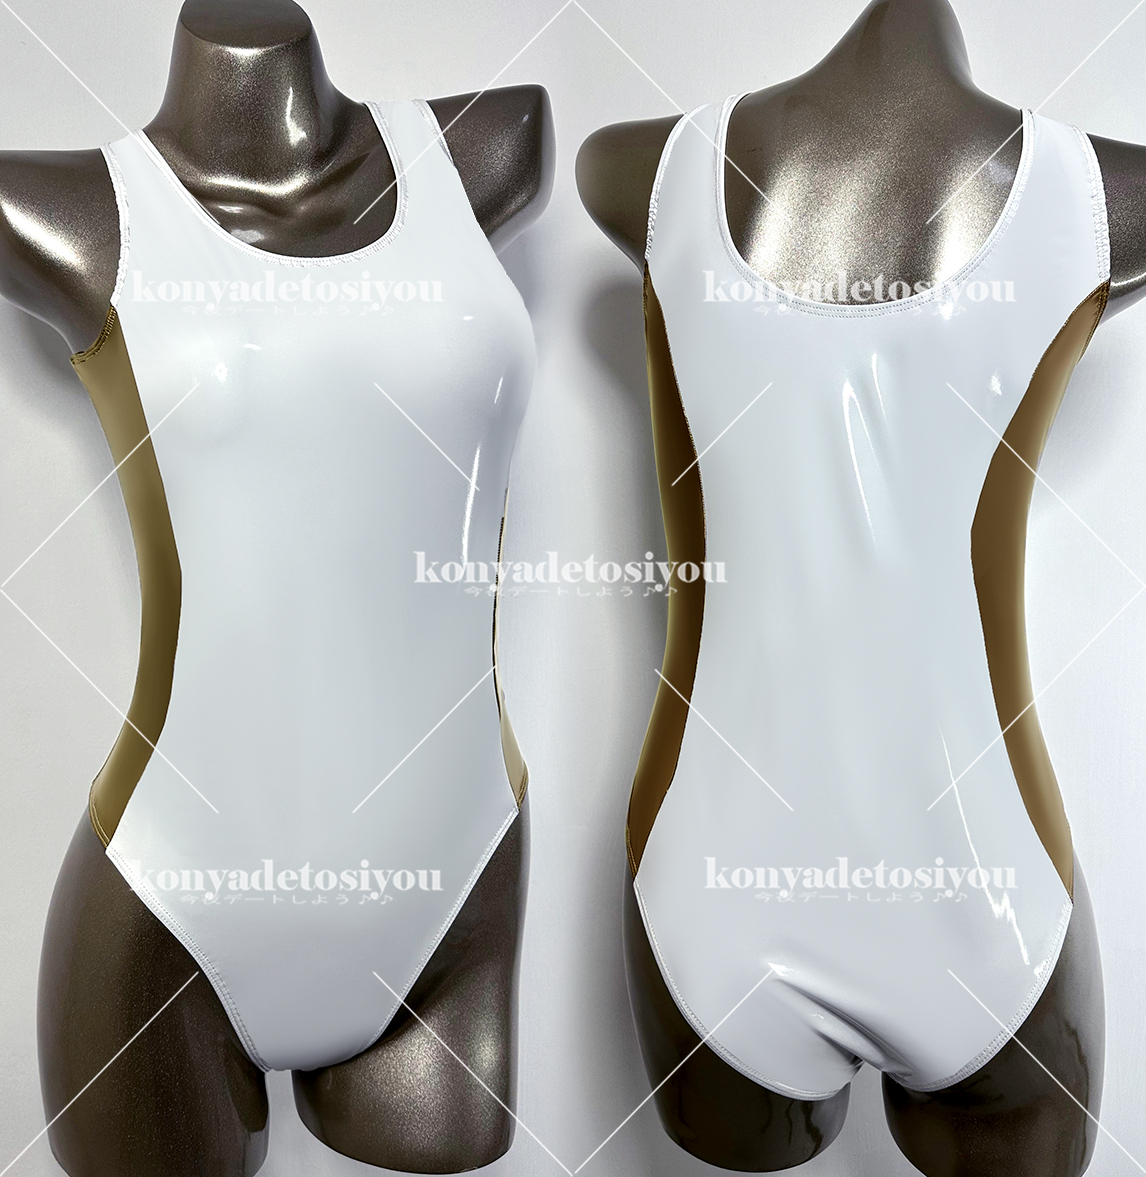 LJH23036-1 белый & золотой XL-XXL супер глянец bai цвет высокий ноги Leotard костюмированная игра купальный костюм race queen спортивная форма маскарадный костюм Event фотосъемка . костюм 